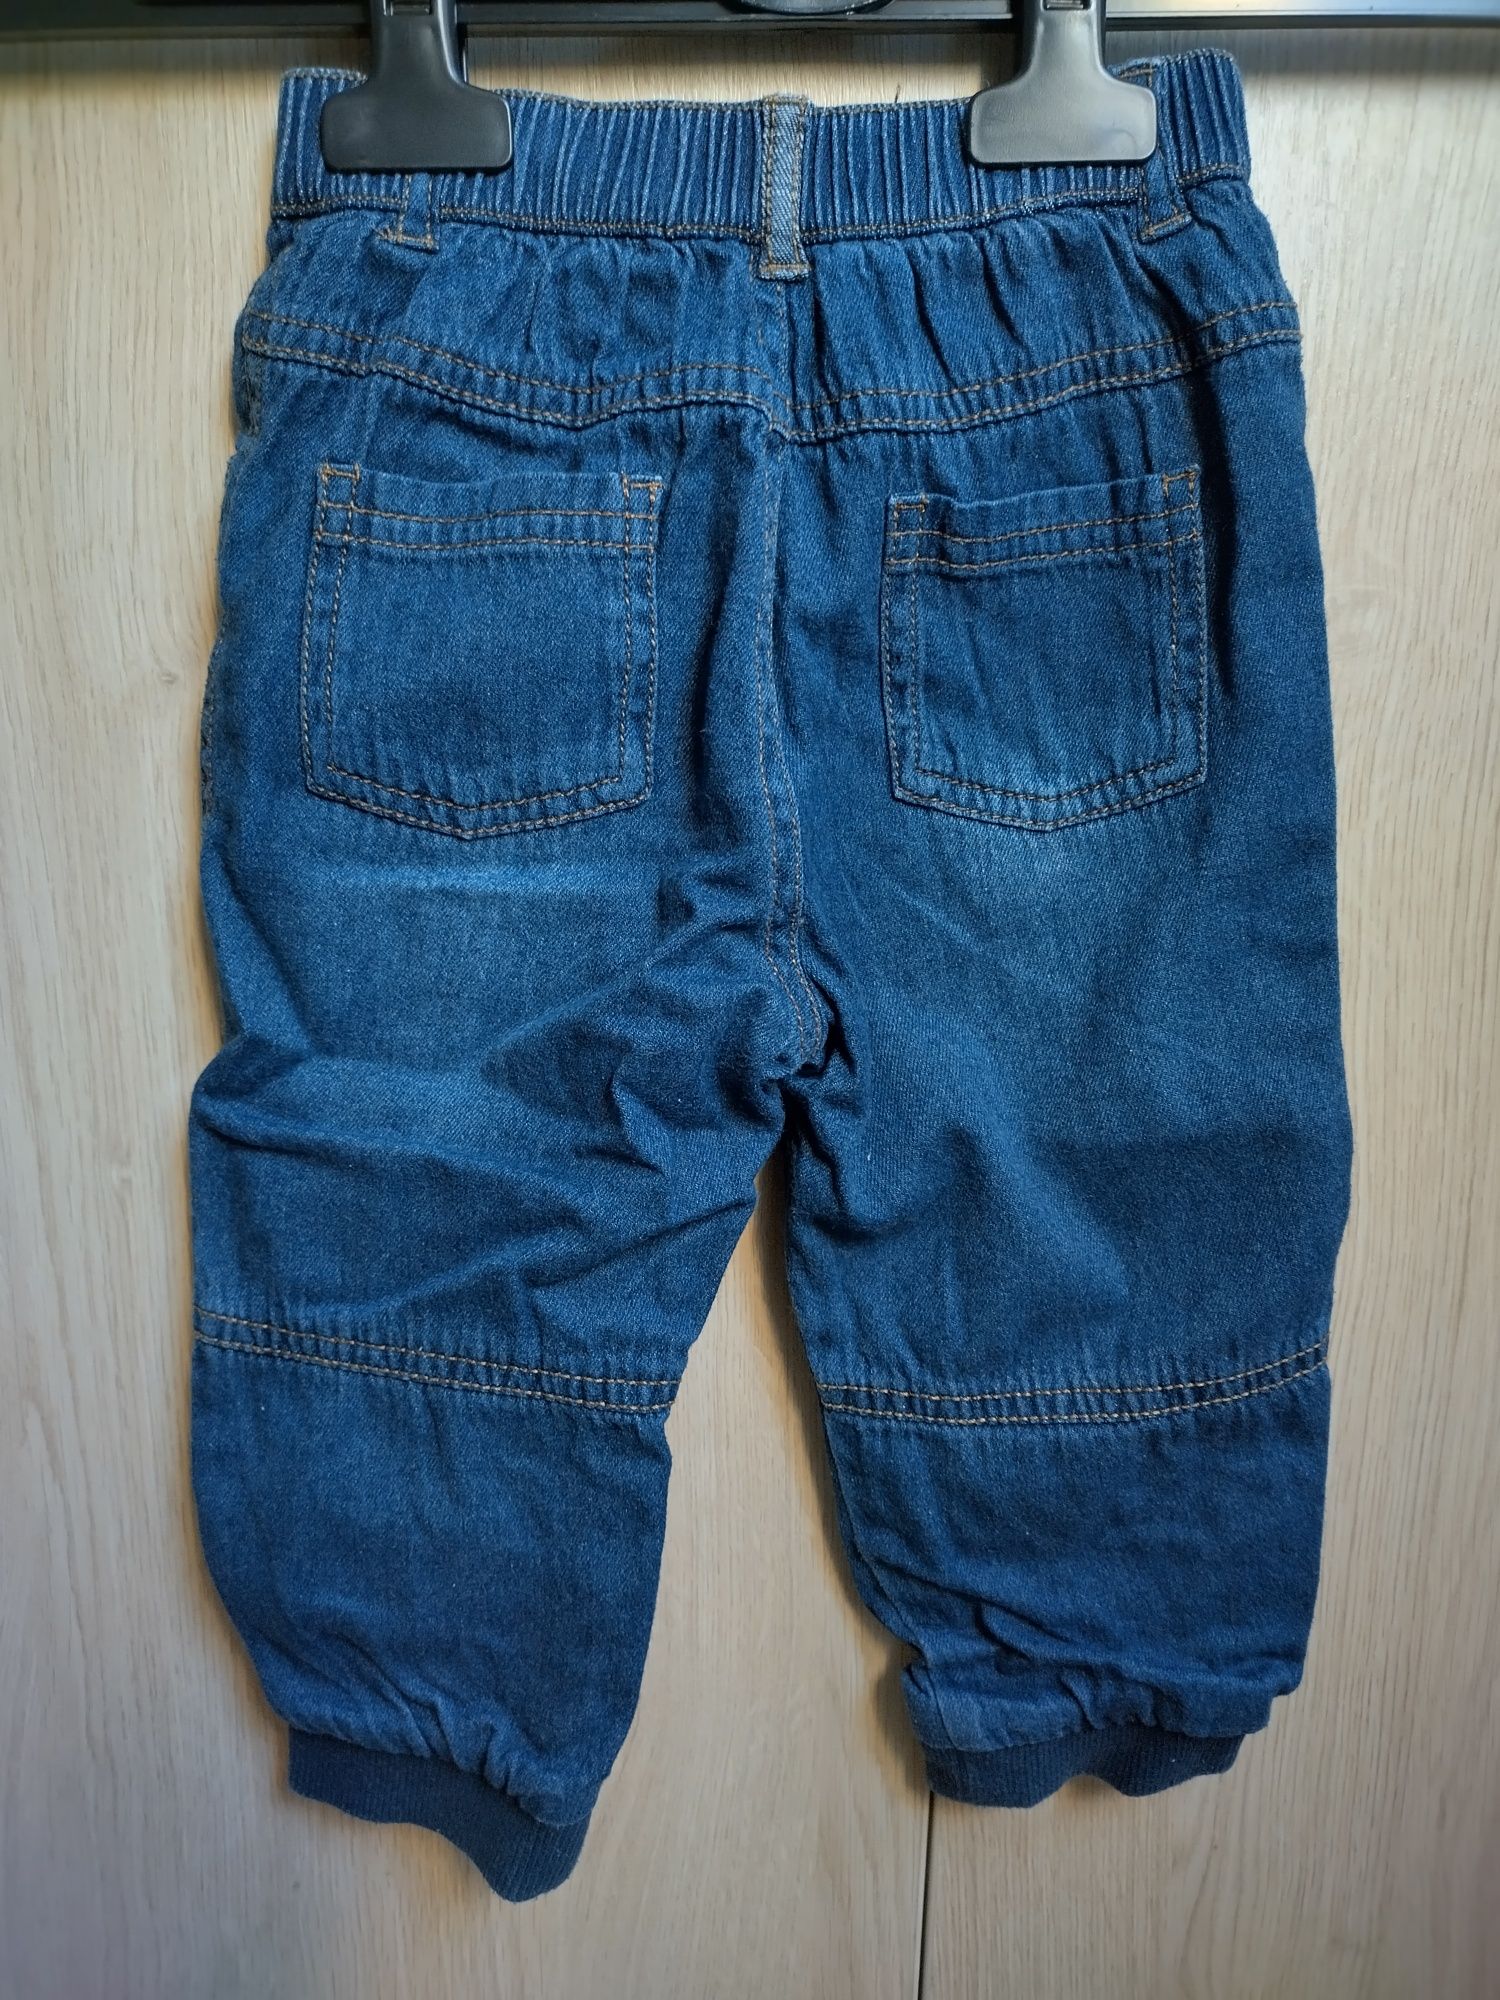 Spodnie jeansy ocieplane zimowe Disney 12-18 miesięcy rozmiar 80-86